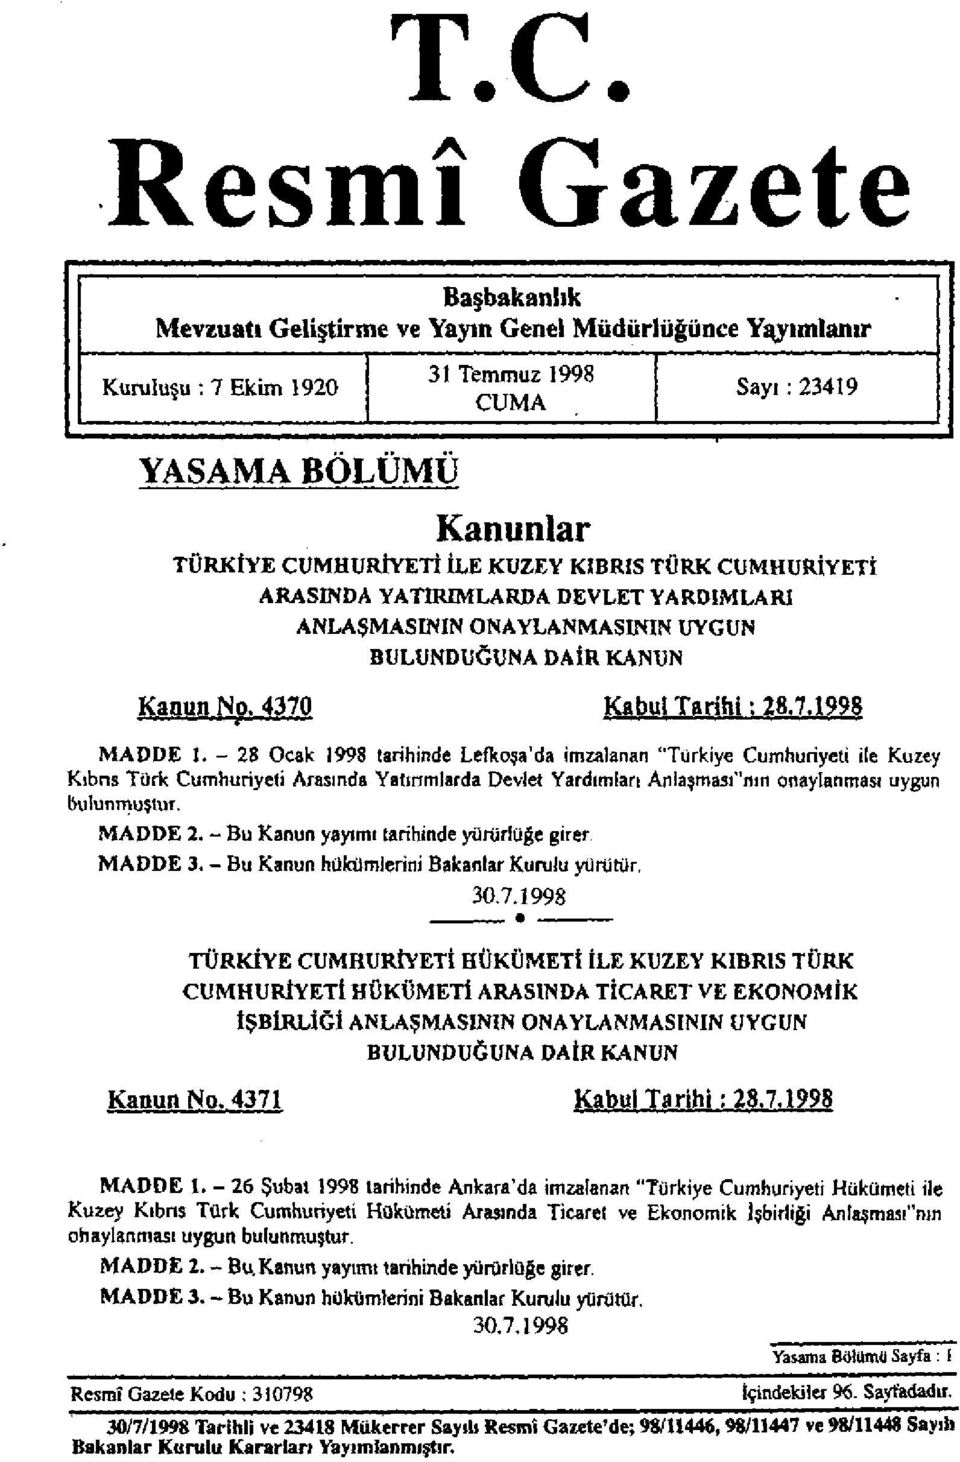 - 28 Ocak 1998 tarihinde Lefkoşa'da imzalanan "Türkiye Cumhuriyeti ile Kuzey Kıbrıs Türk Cumhuriyeti Arasında Yatırımlarda Devlet Yardımları Anlaşması"nın onaylanması uygun bulunmuştur. MADDE 2.